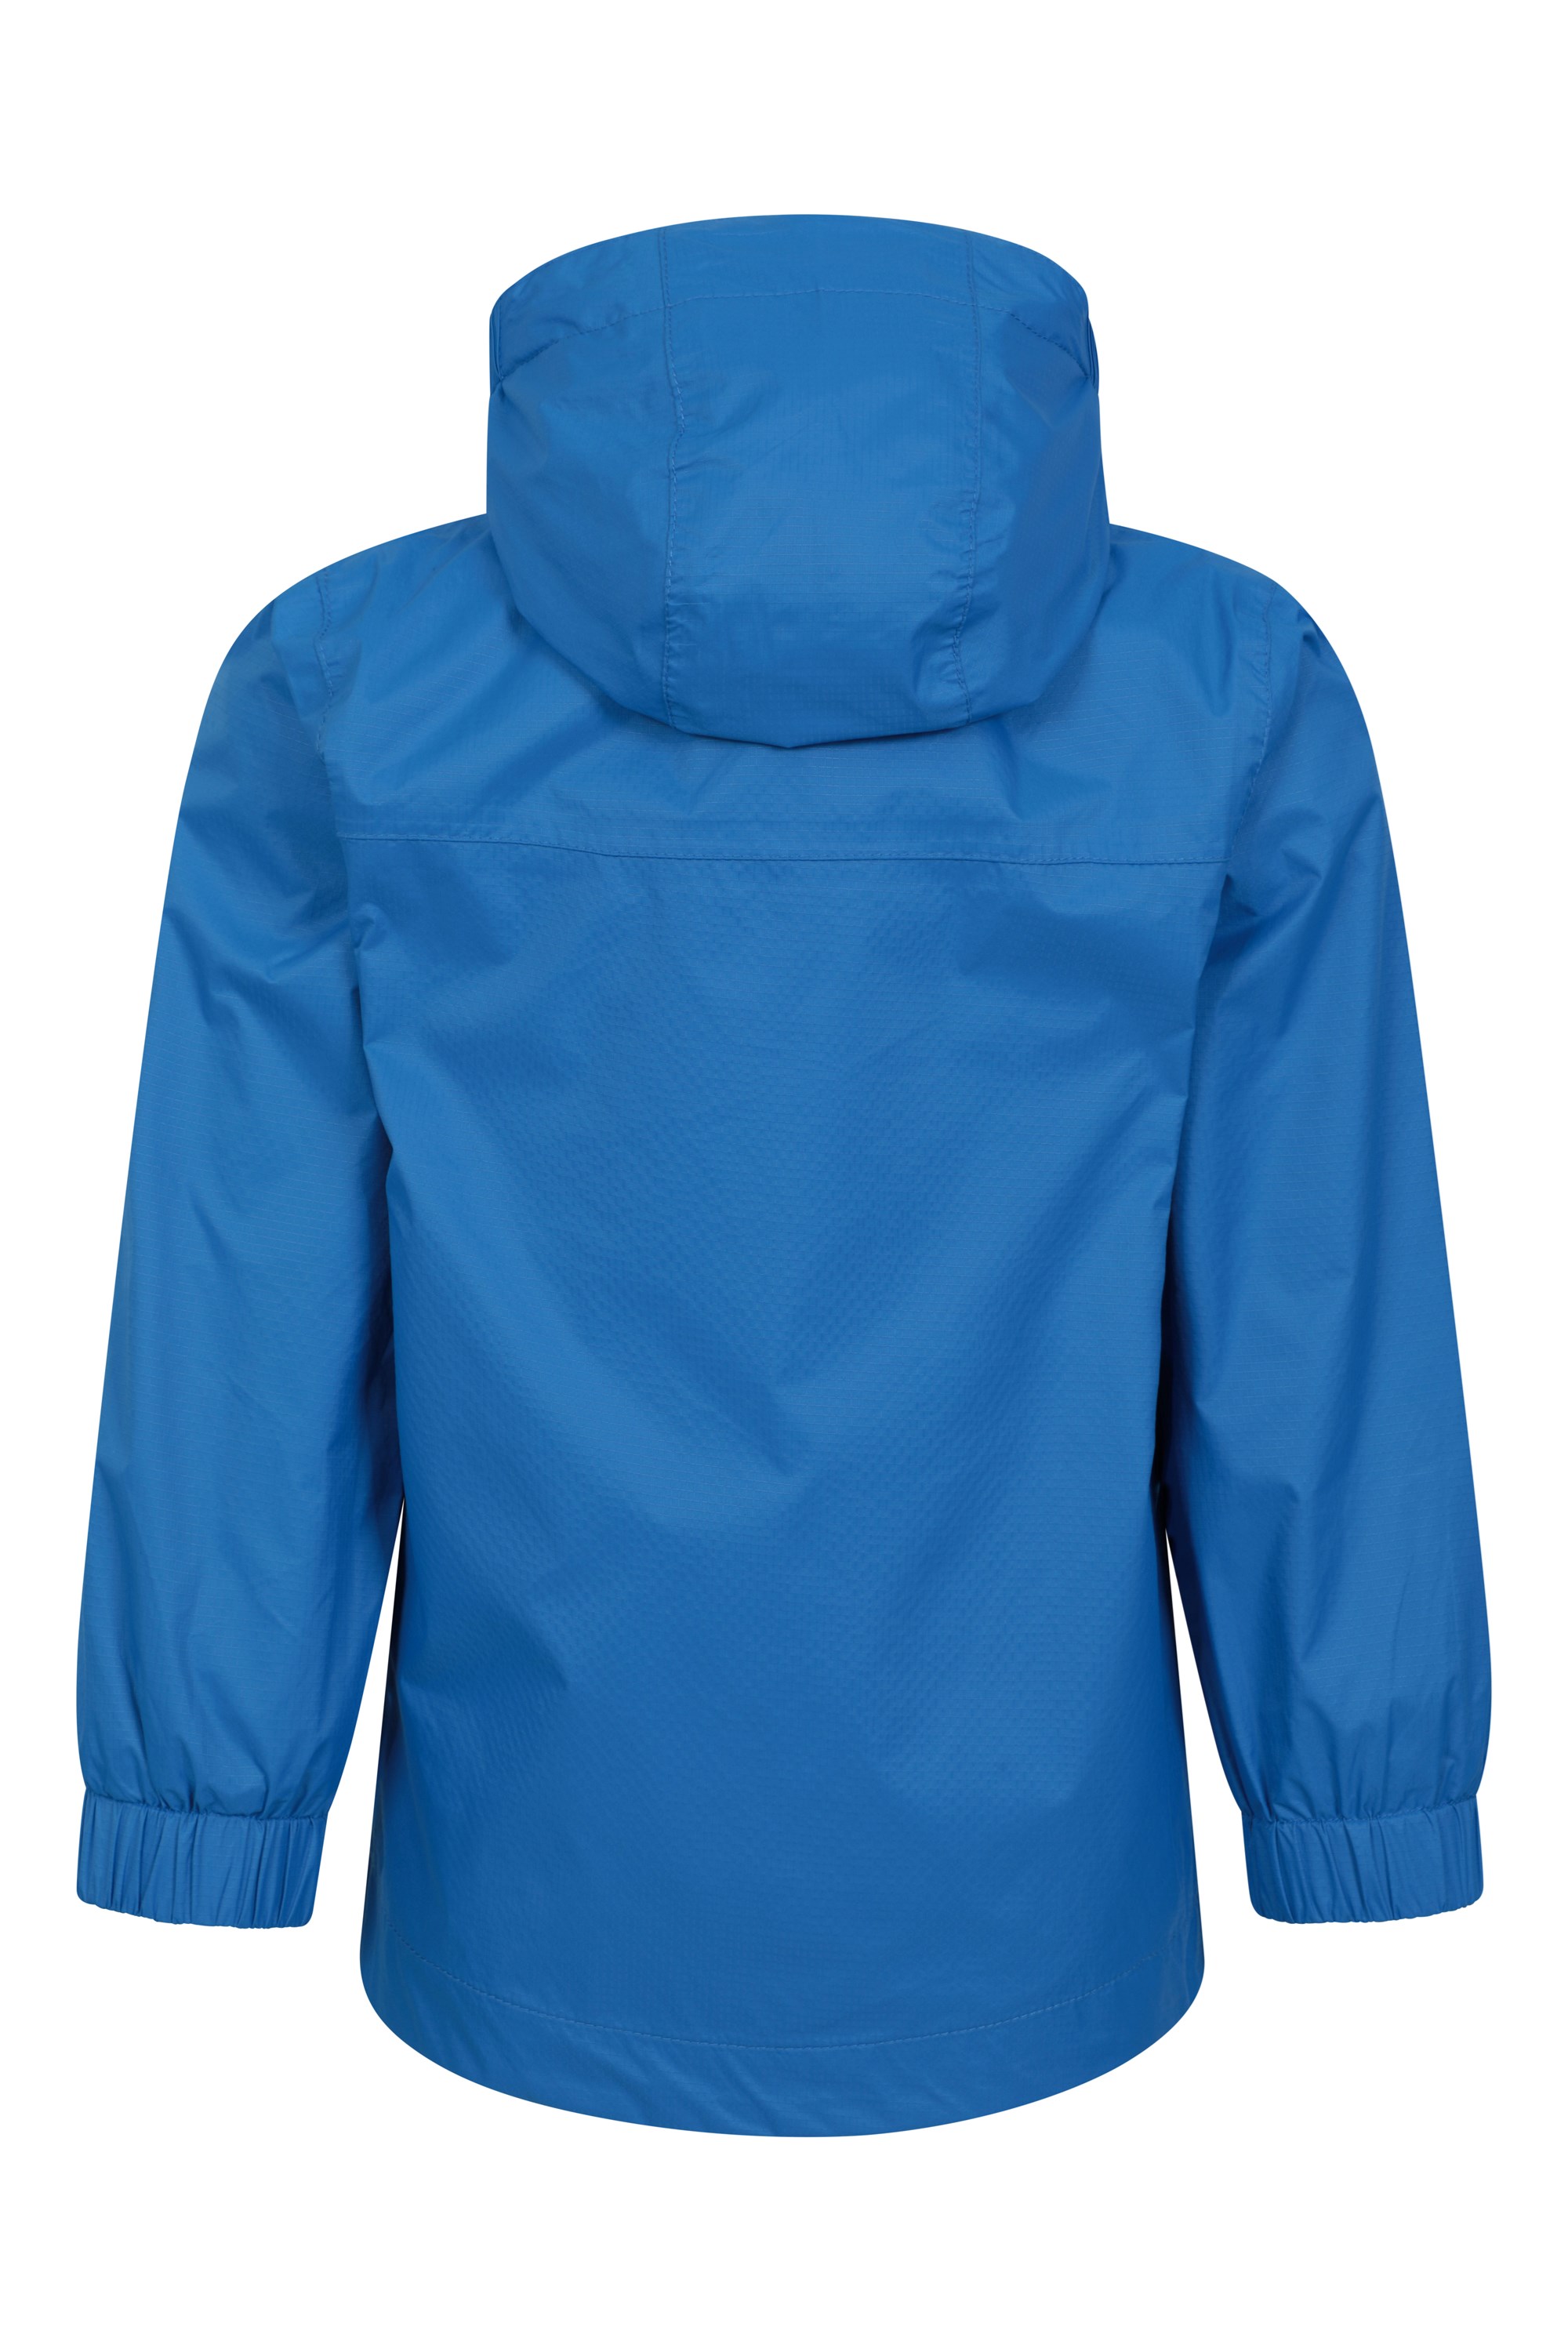 Mountain Warehouse Torrent Jaqueta de chuva feminina impermeável - Costuras  seladas, Preto, 24 